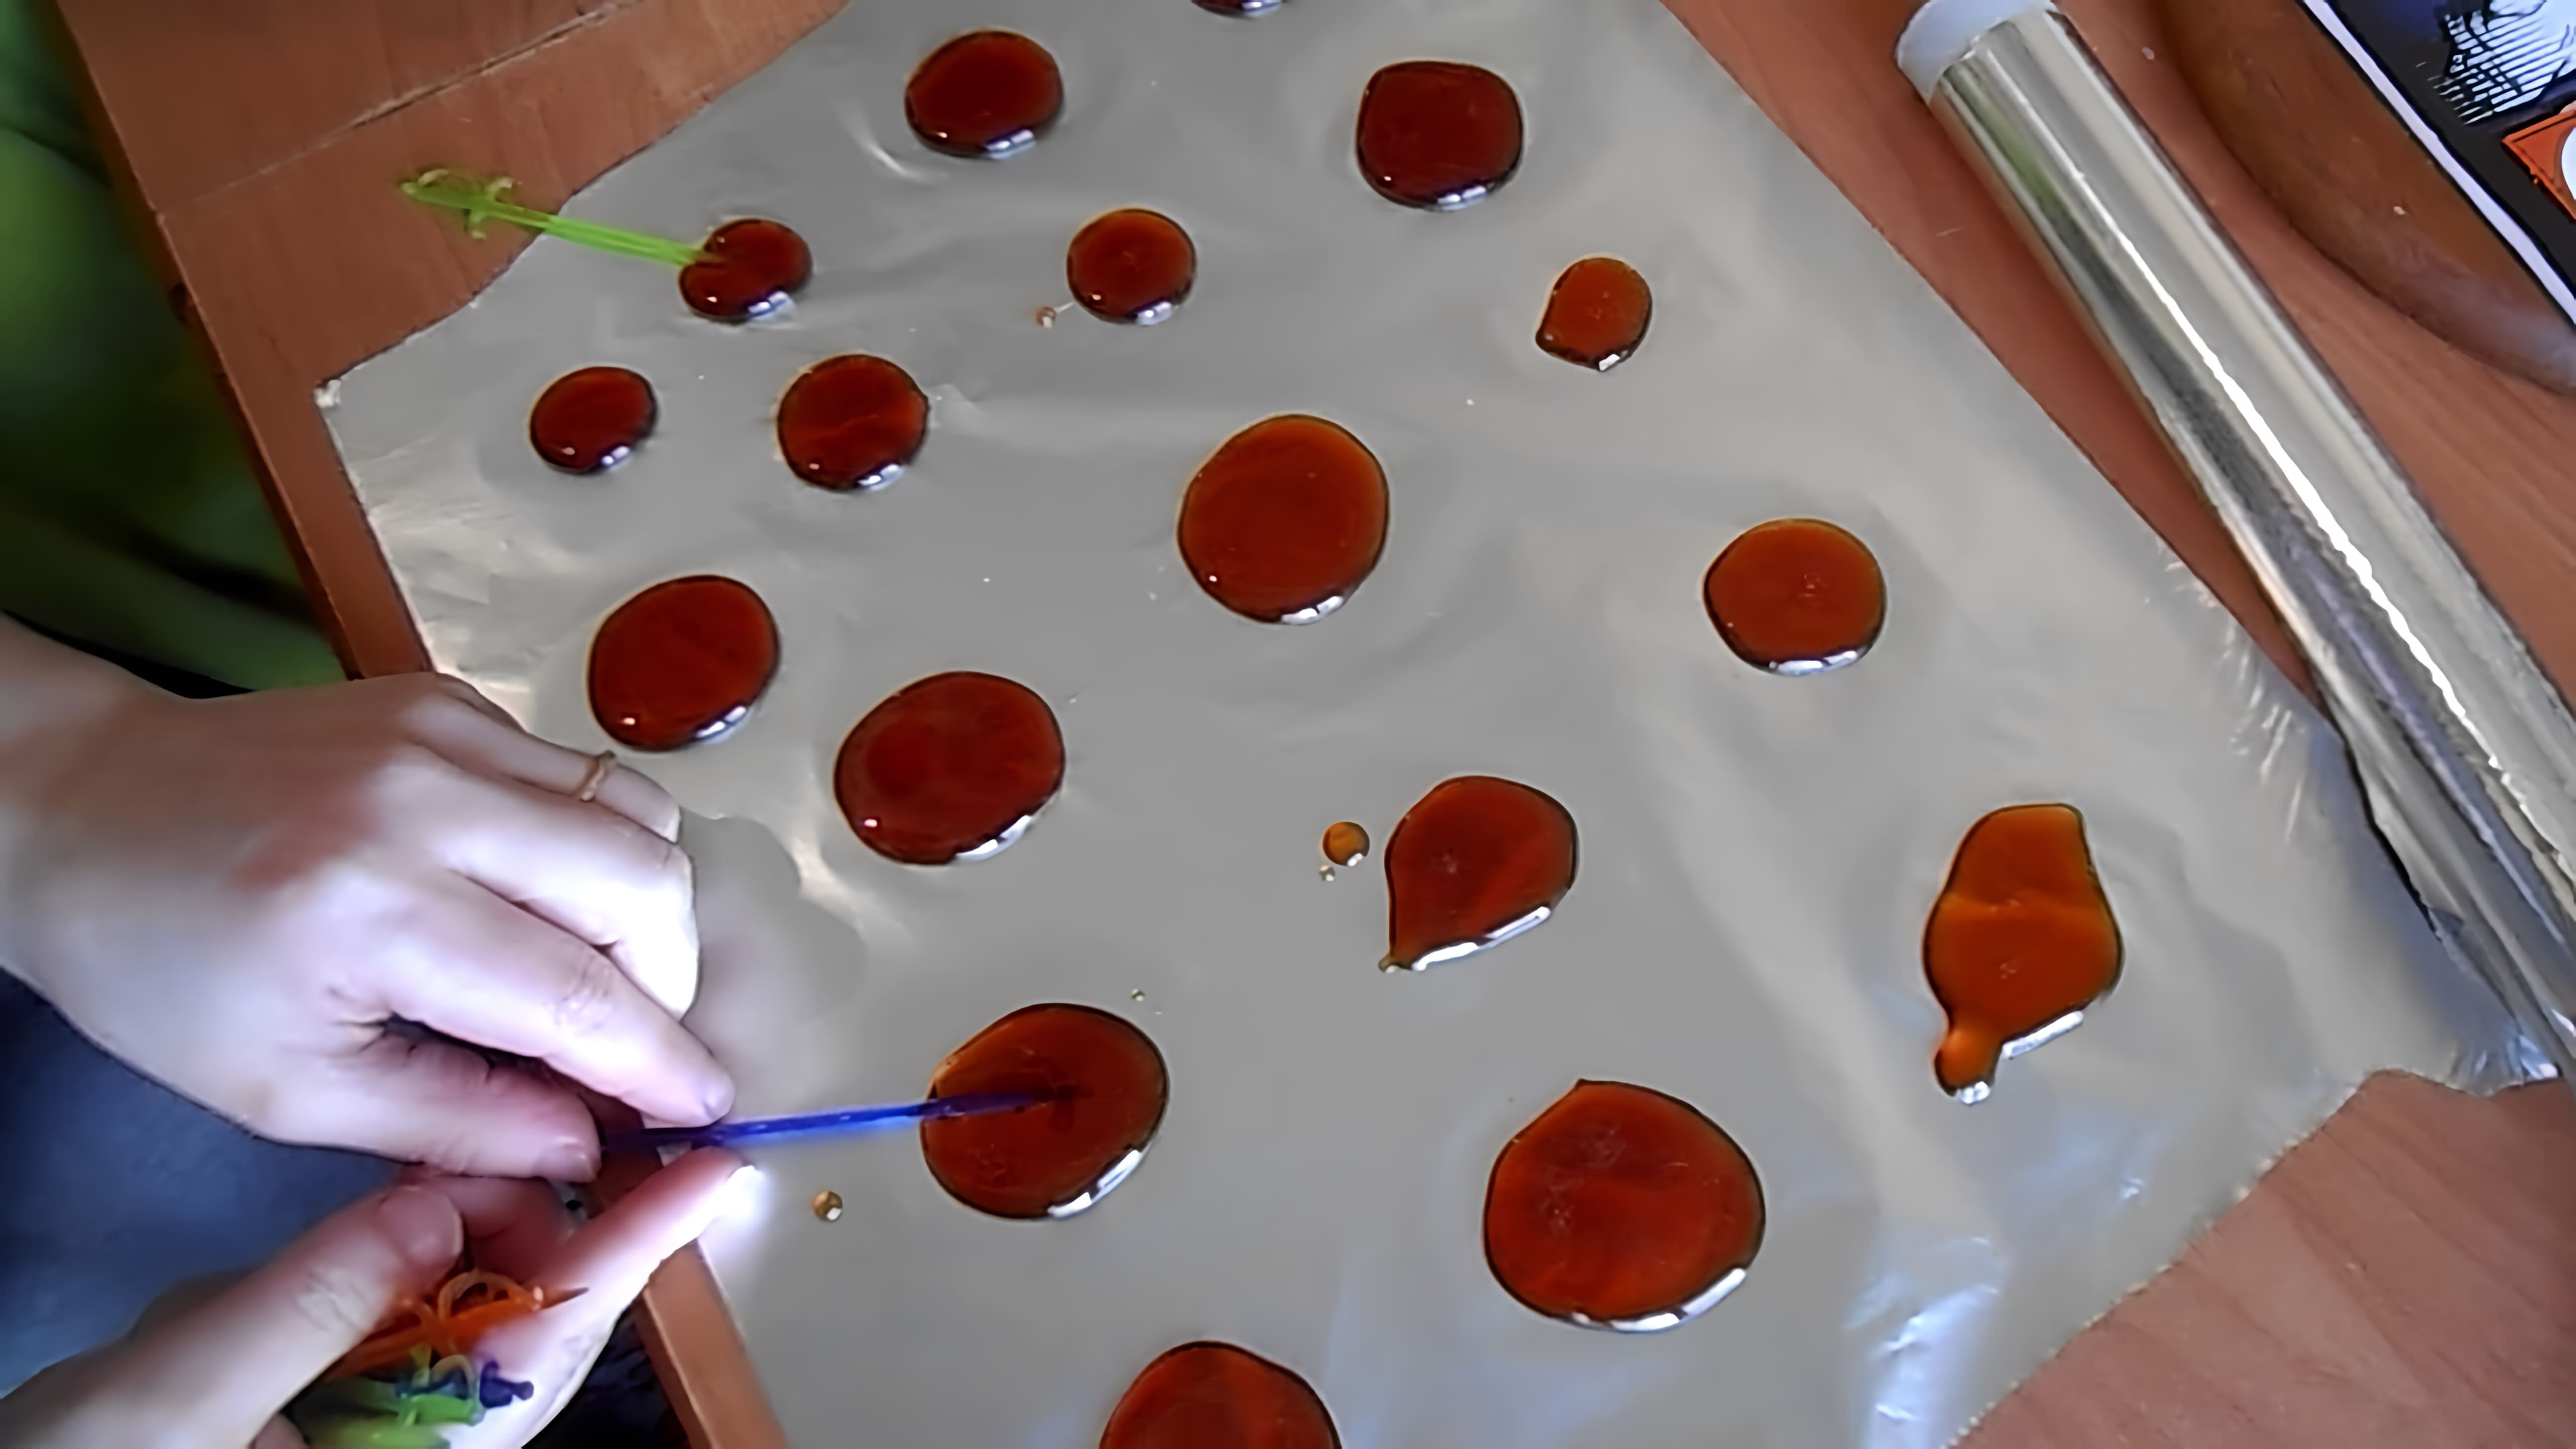 В этом видео демонстрируется процесс изготовления конфет из сахара